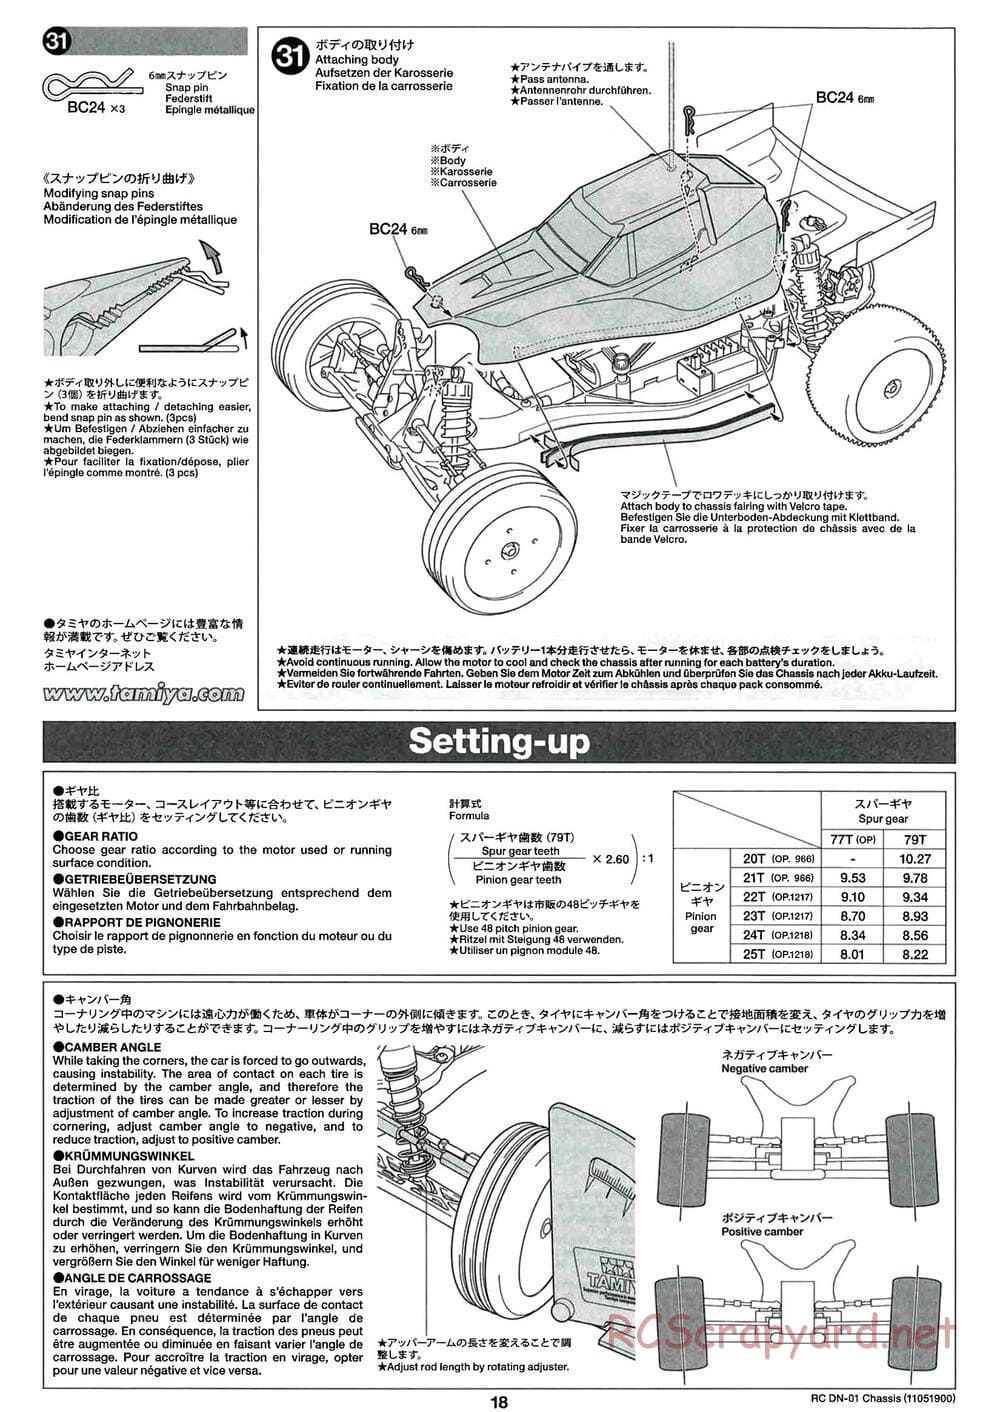 Tamiya - DN-01 Chassis - Manual - Page 18